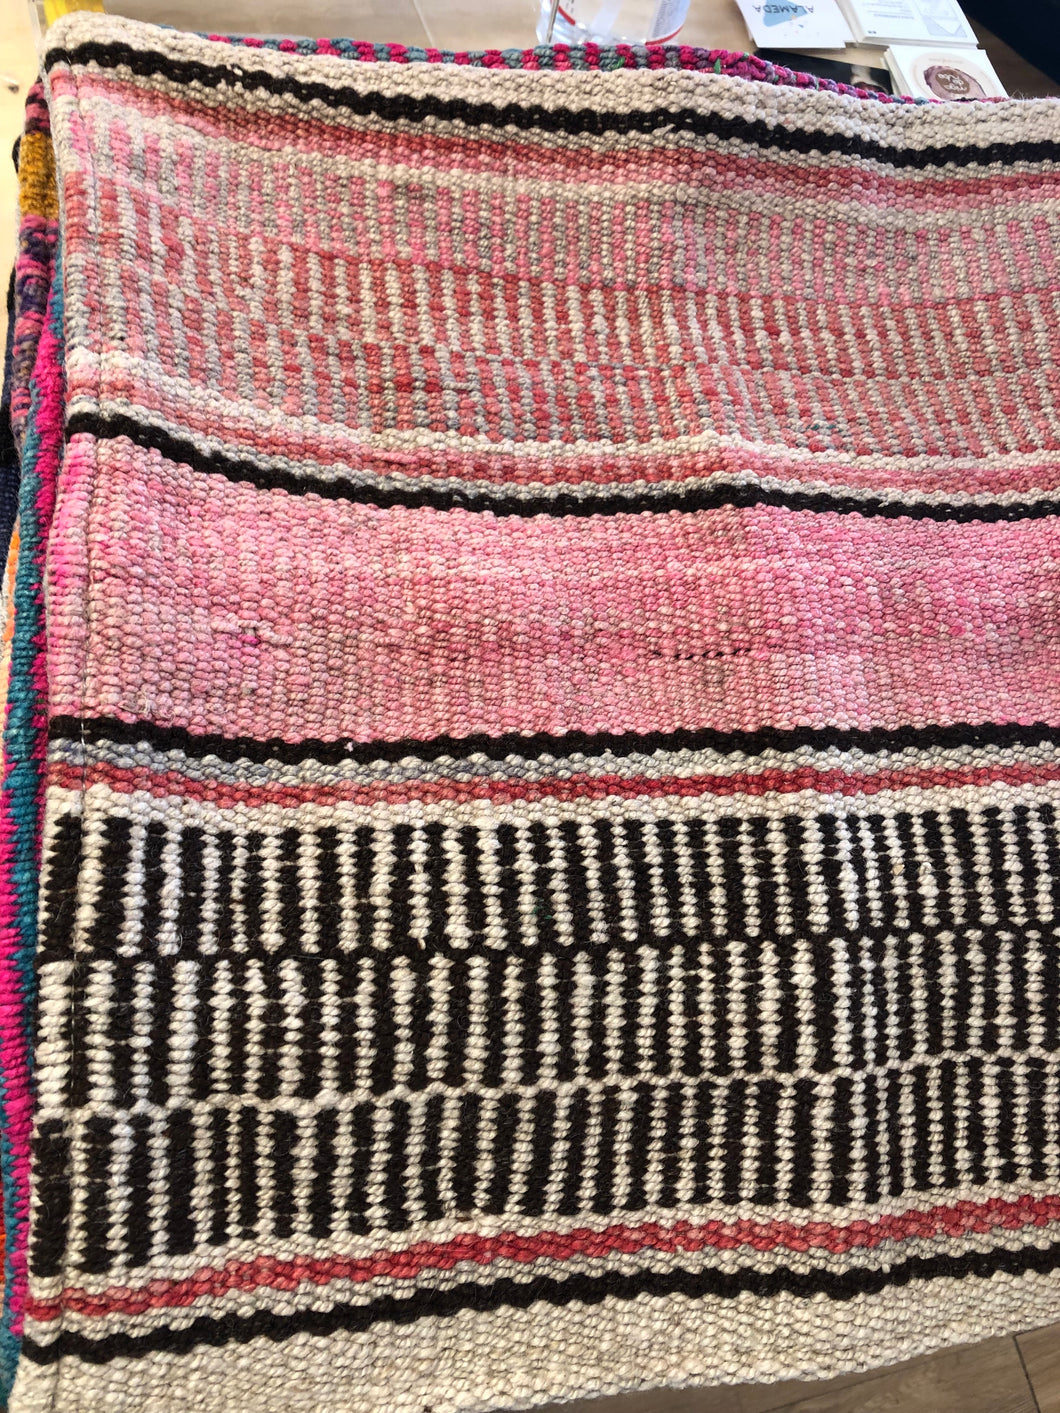 Cojin de lana peruano / Handwoven Peruvian wool pillow